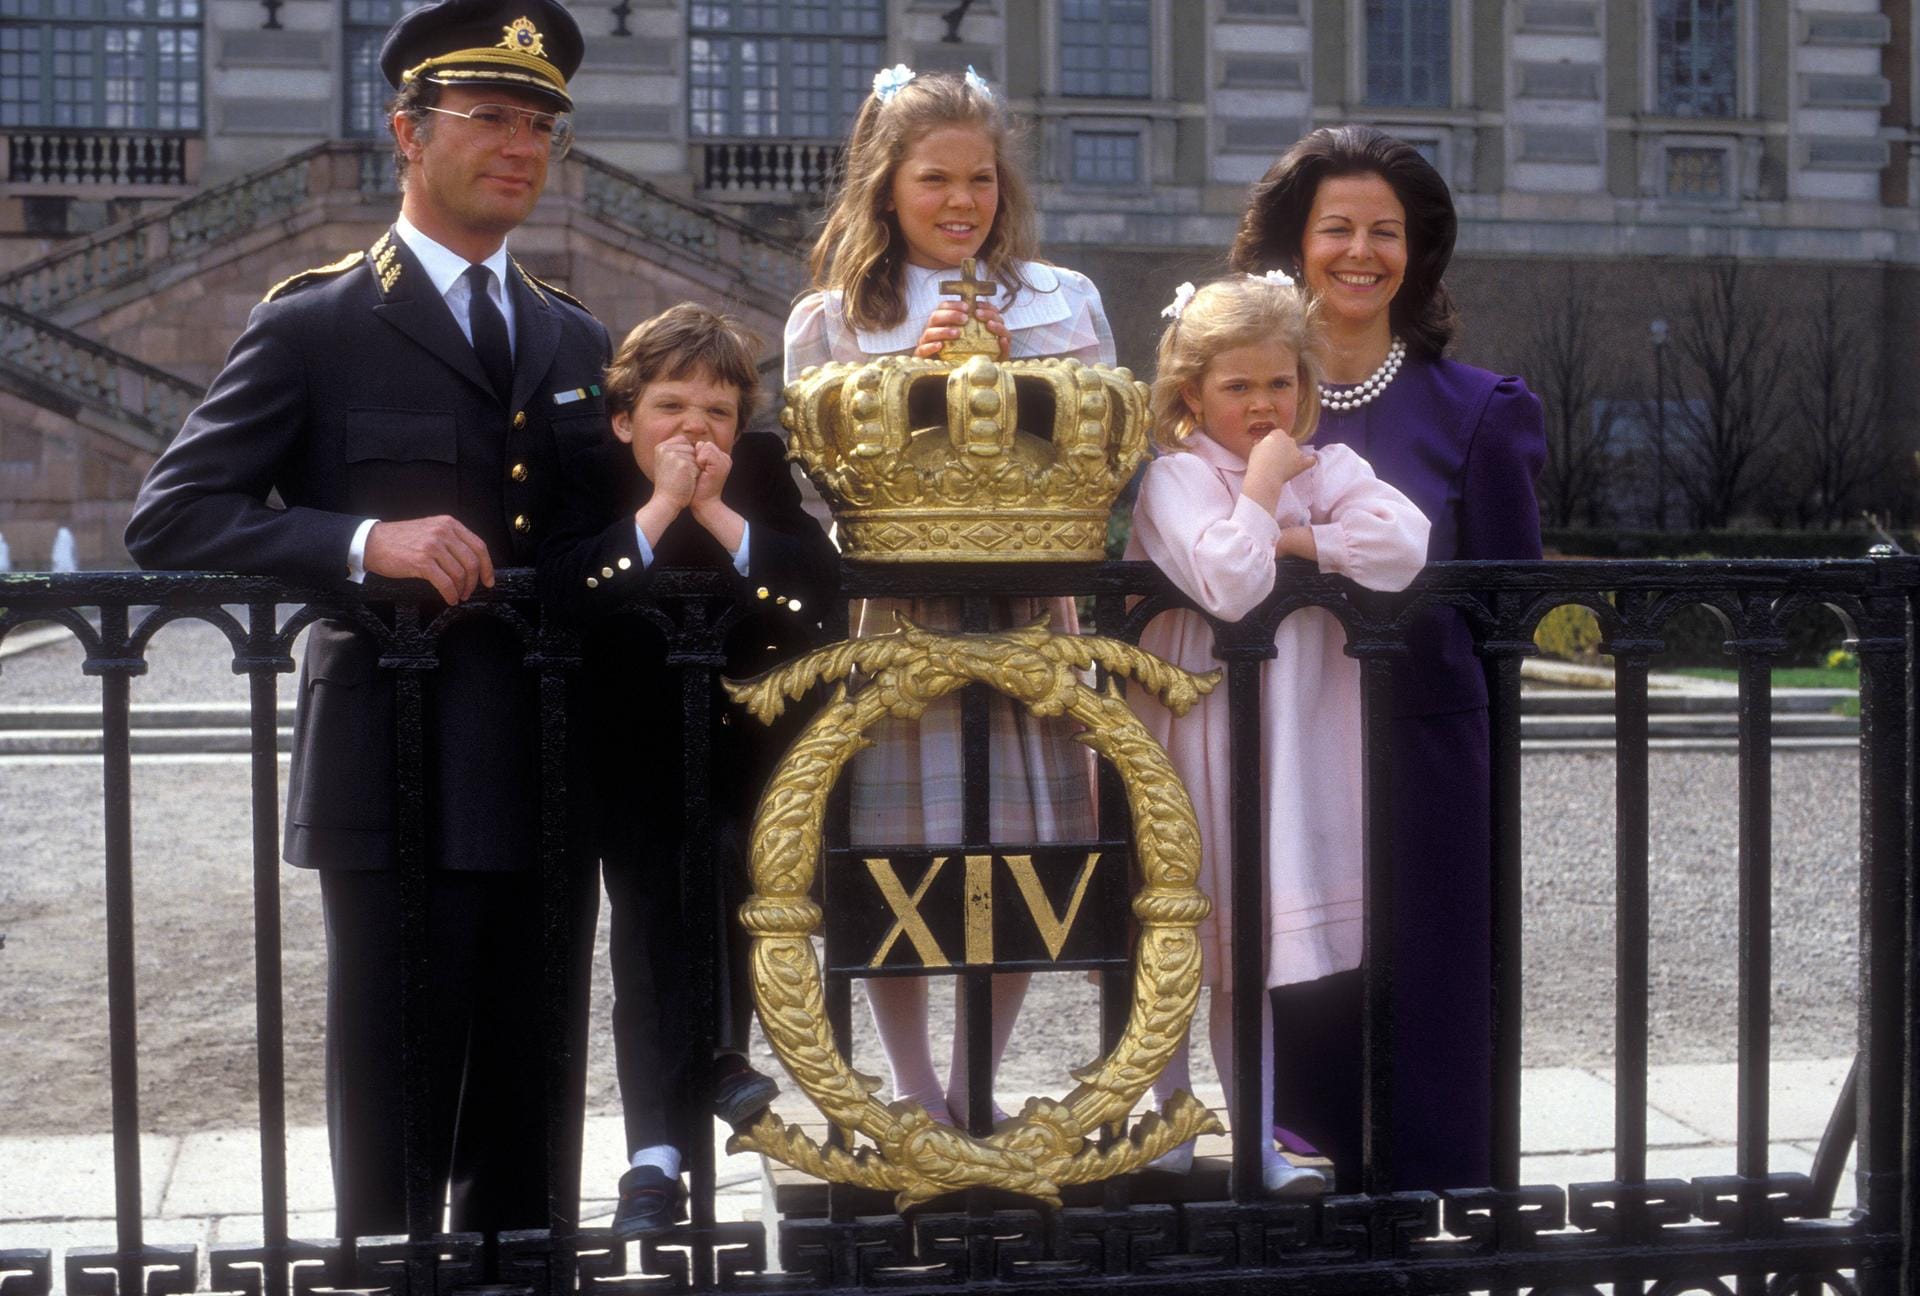 Victoria mit ihren Eltern, König Carl Gustaf und Königin Silvia, sowie ihren Geschwistern, Carl Philip und Madeleine, als junges Mädchen.